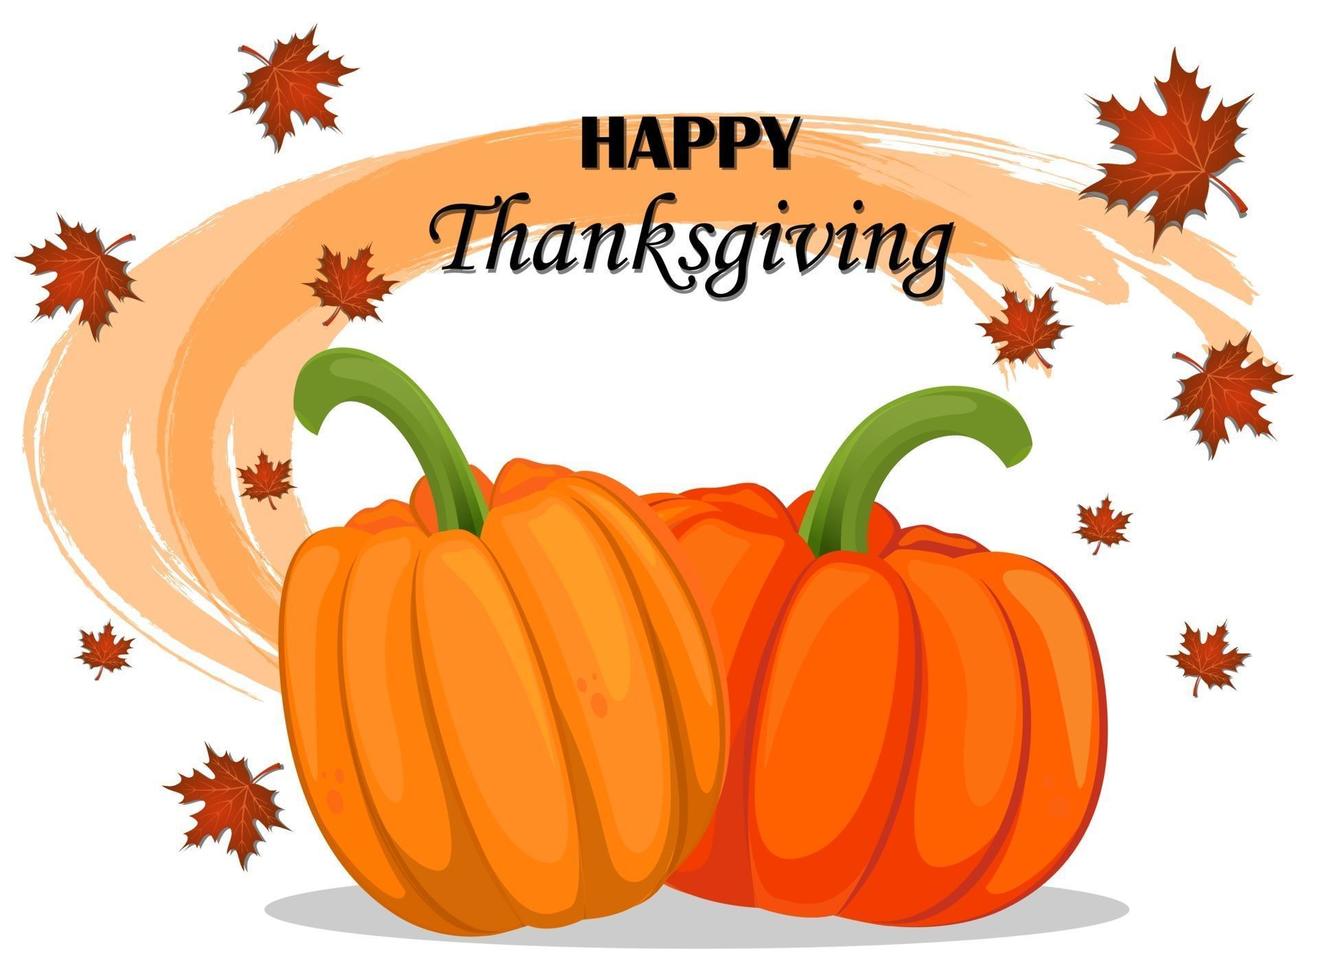 joyeux jour de Thanksgiving carte de voeux avec des citrouilles et des feuilles d'érable. vecteur